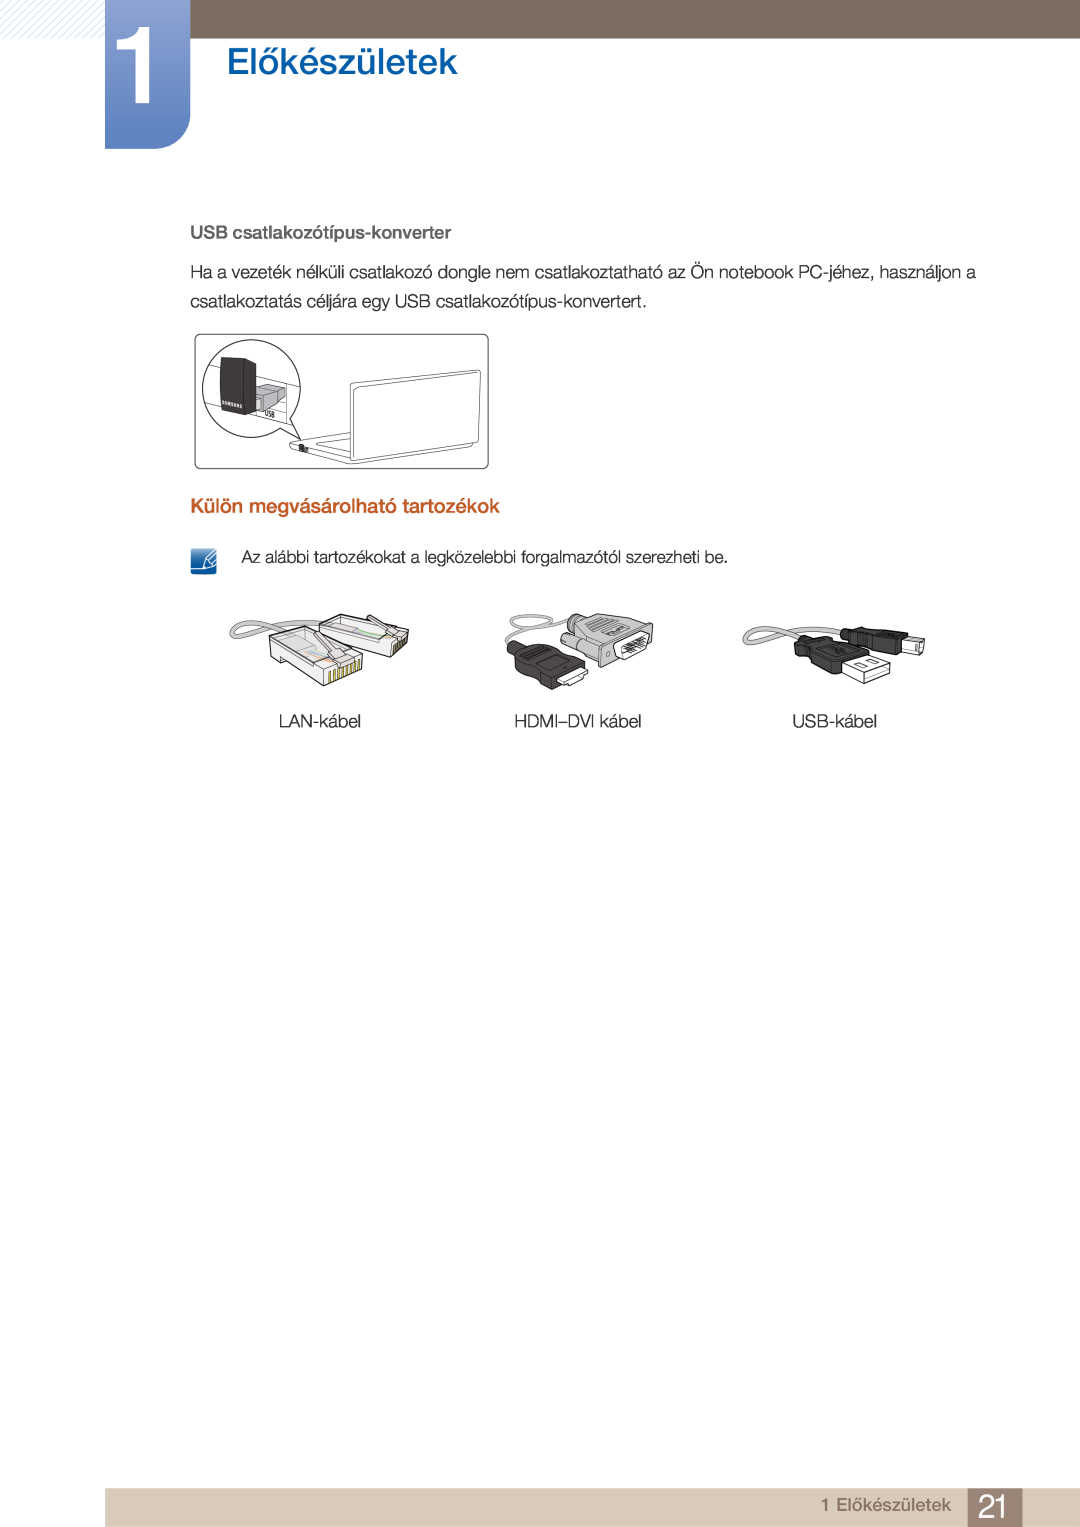 Samsung LC23A750XS/EN manual 1 Előkészületek, Külön megvásárolható tartozékok, USB csatlakozótípus-konverter, LAN-kábel 